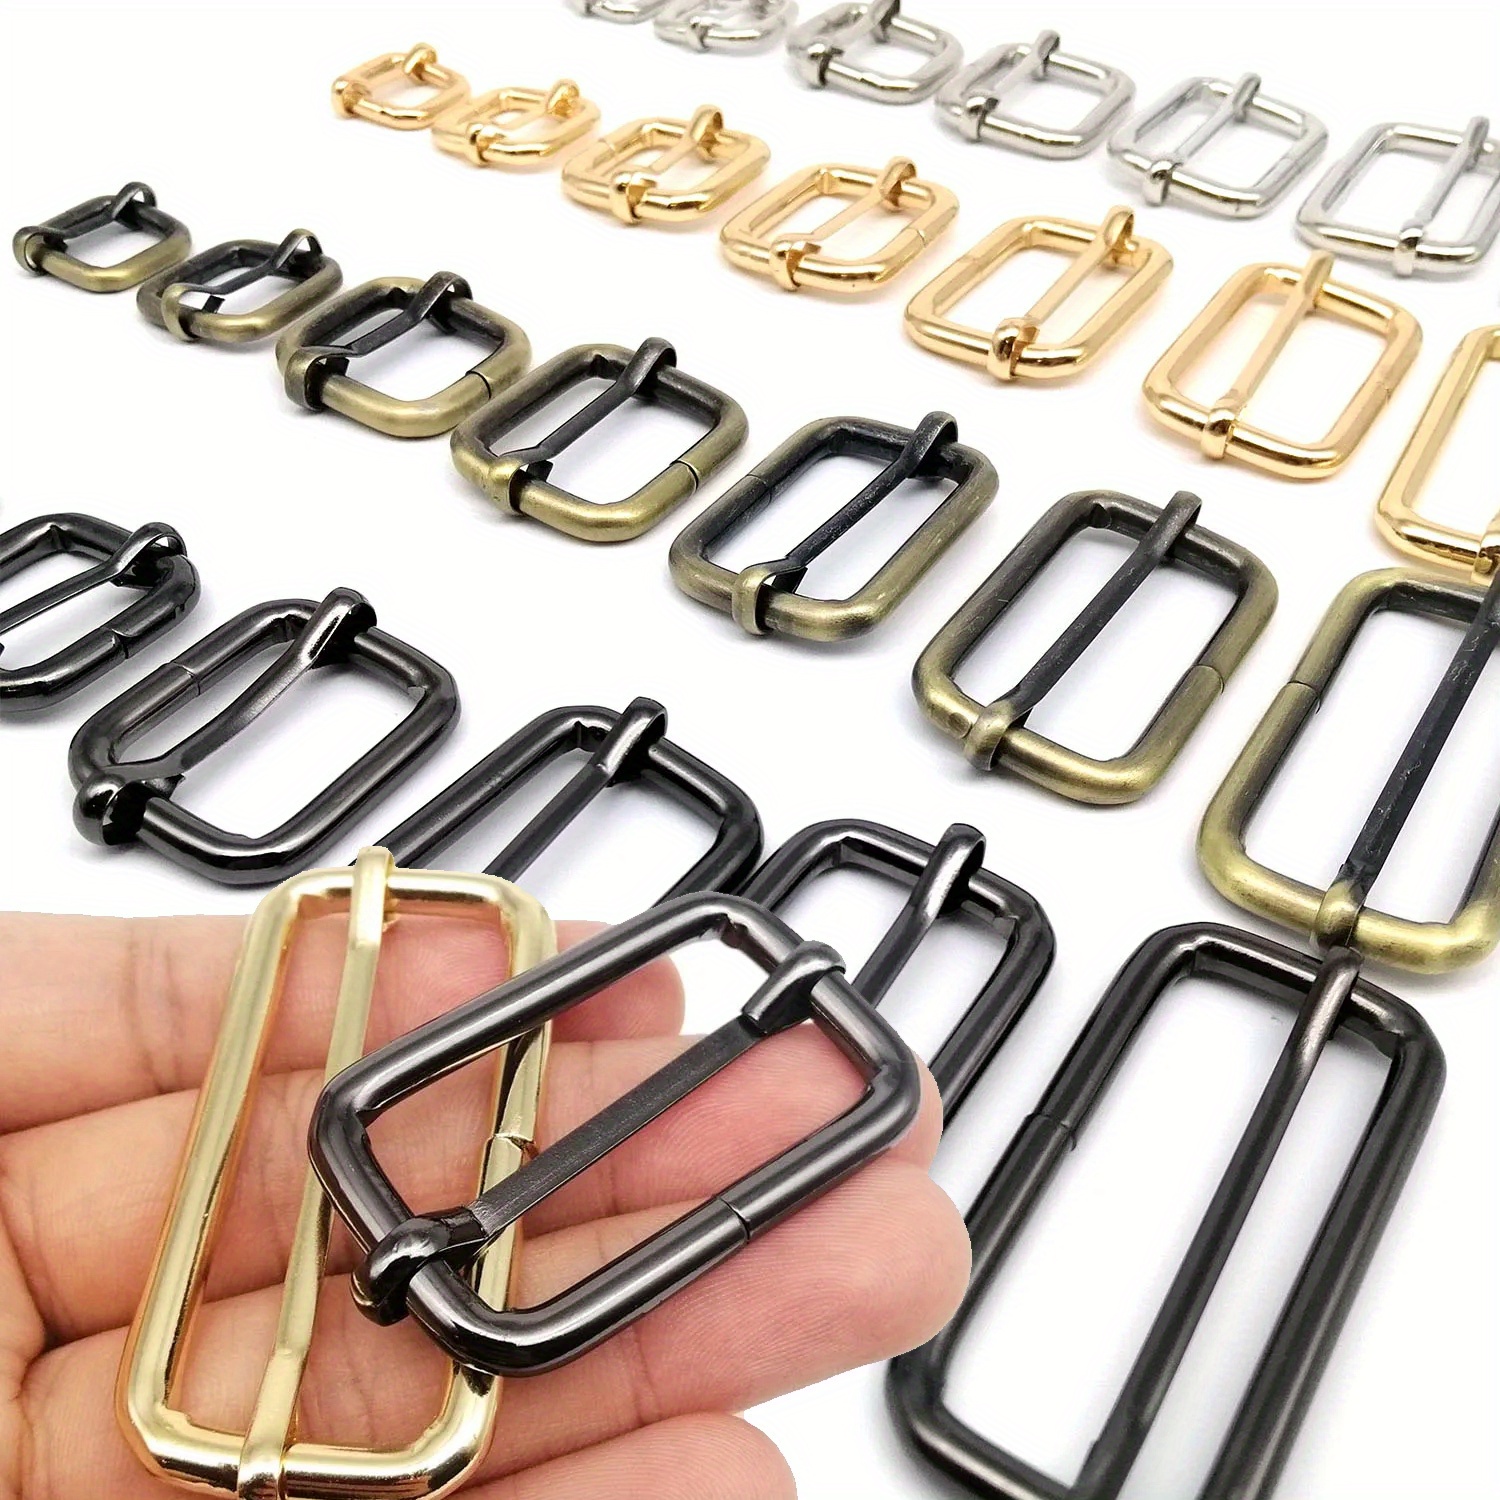 10 PCS Metal Silver/Black/Pale Gold Slide Buckles Strap Fasteners Belt  Adjuster Purse Bag adjustable leather craft straps Buckle - AliExpress